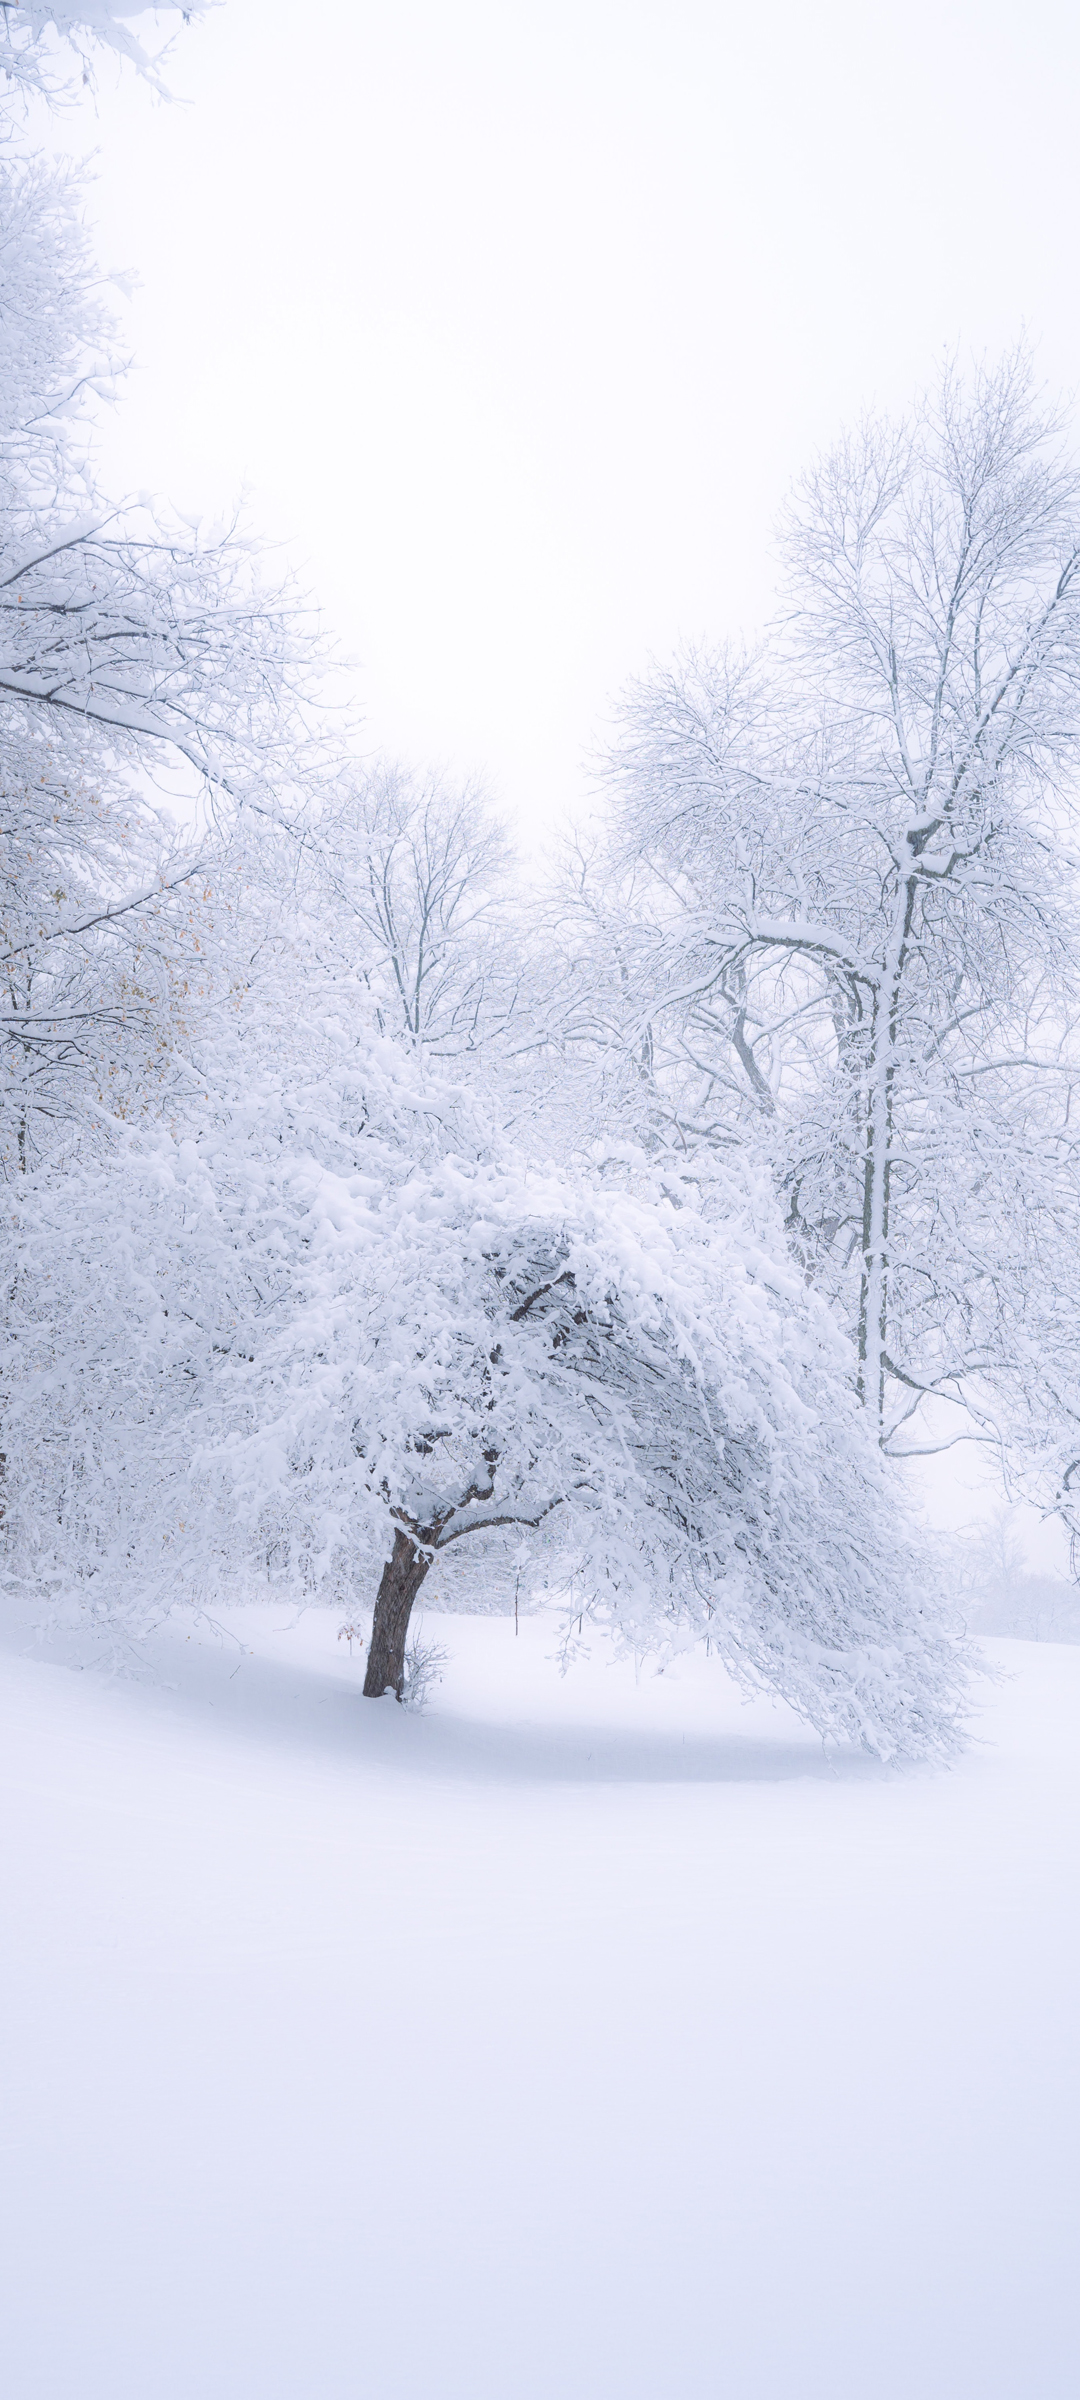 冬天 雪景 树 大雪 风景 手机 壁纸